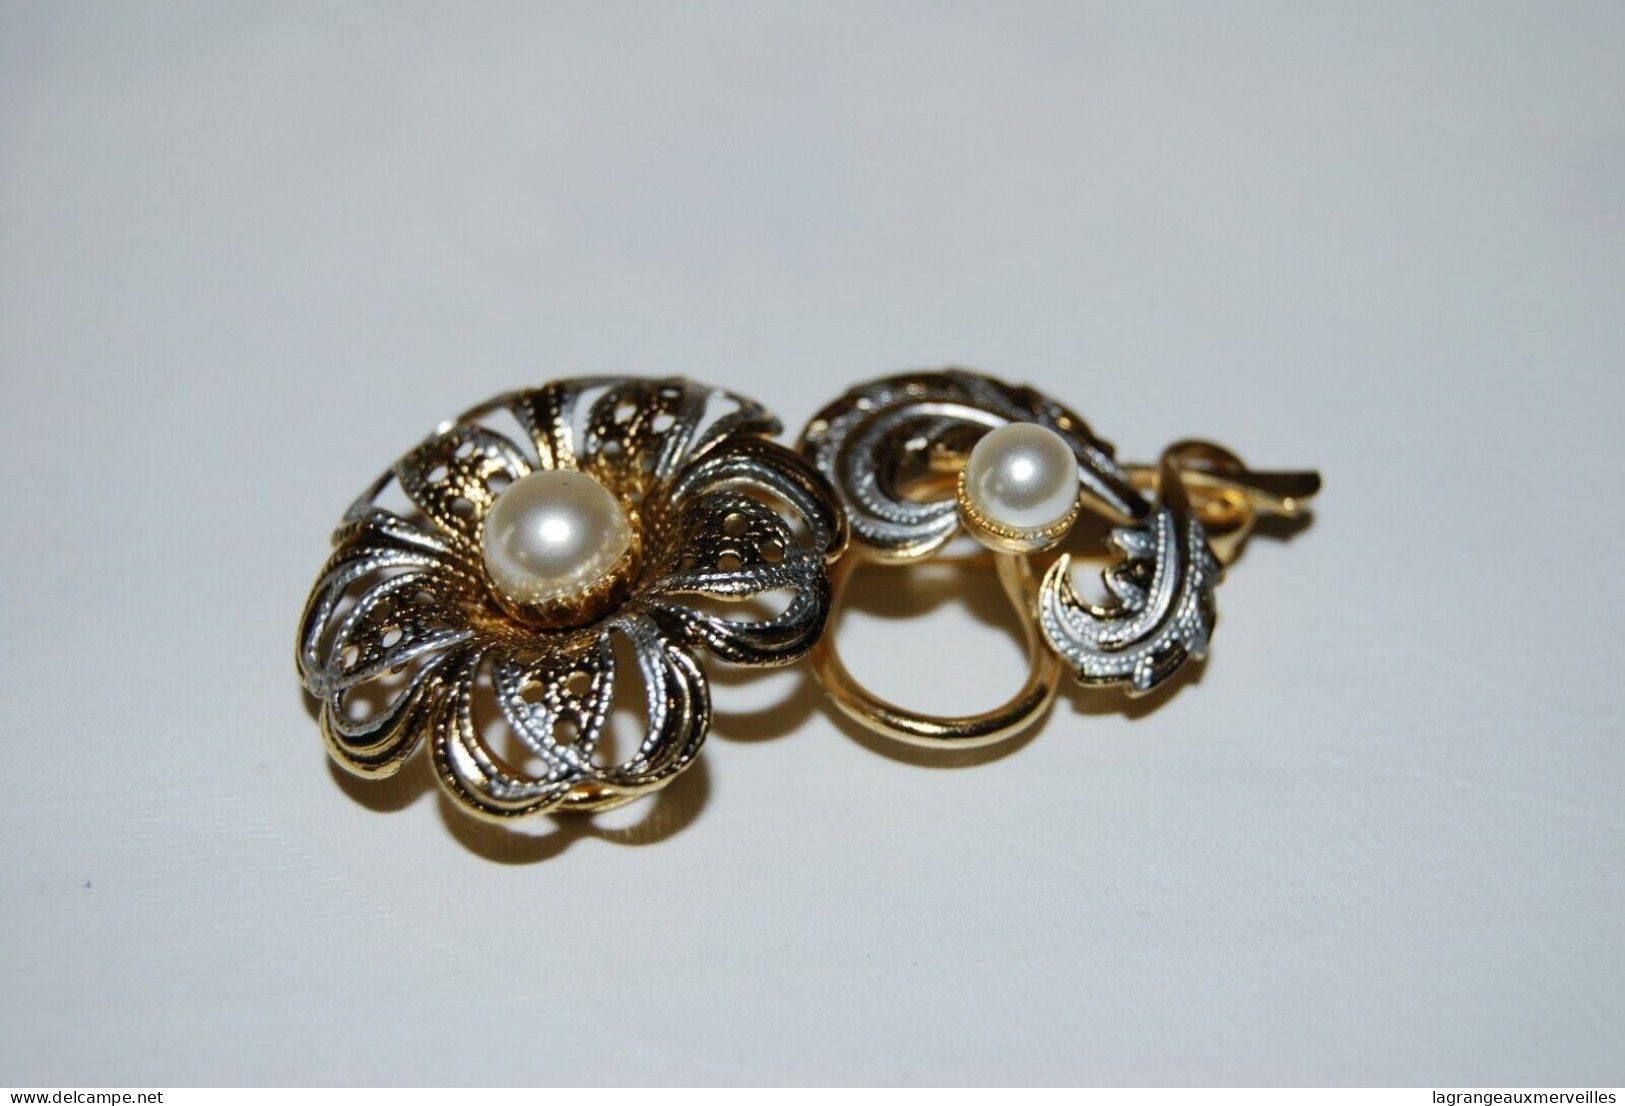 C56 Ancienne Bijoux - Broche Pour Dame - élégance - Brillant Perle - Broches